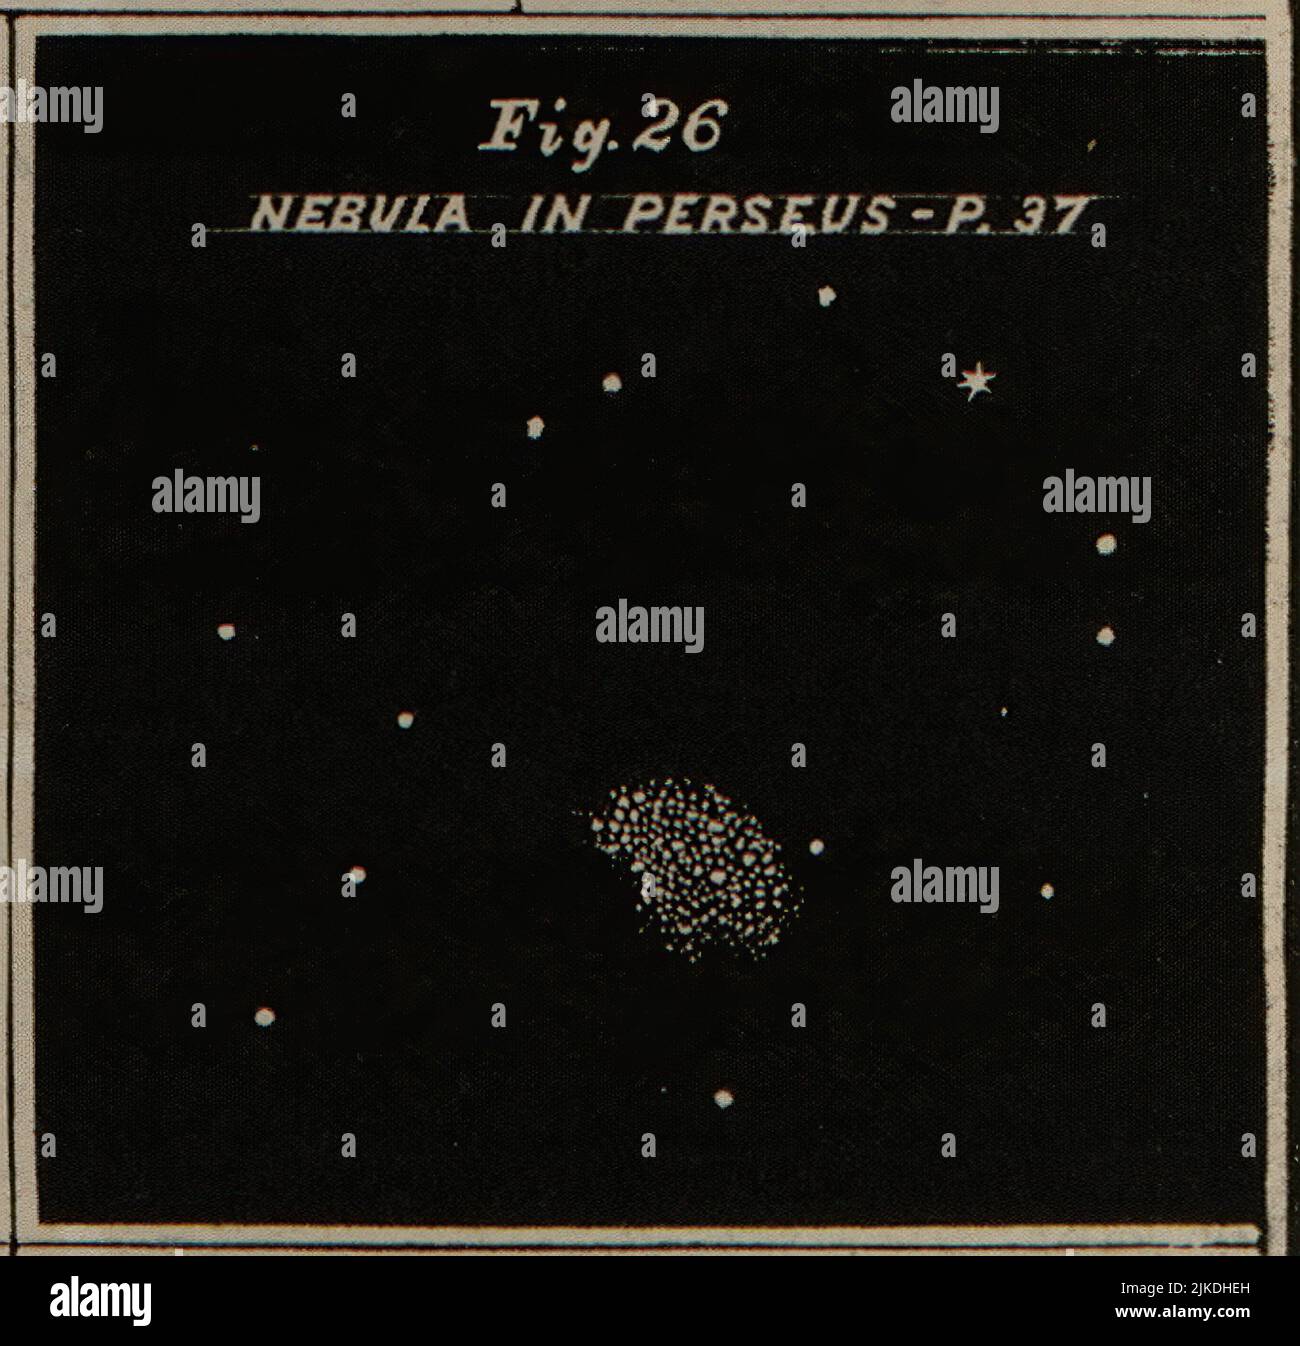 Nebel in Perseus - Atlas entwickelt, um Burritts Geografie des Himmels zu illustrieren - Burritt, Elijah H. Doppelte Sterne und Sternhaufen. Cluster, nebulæ Stockfoto